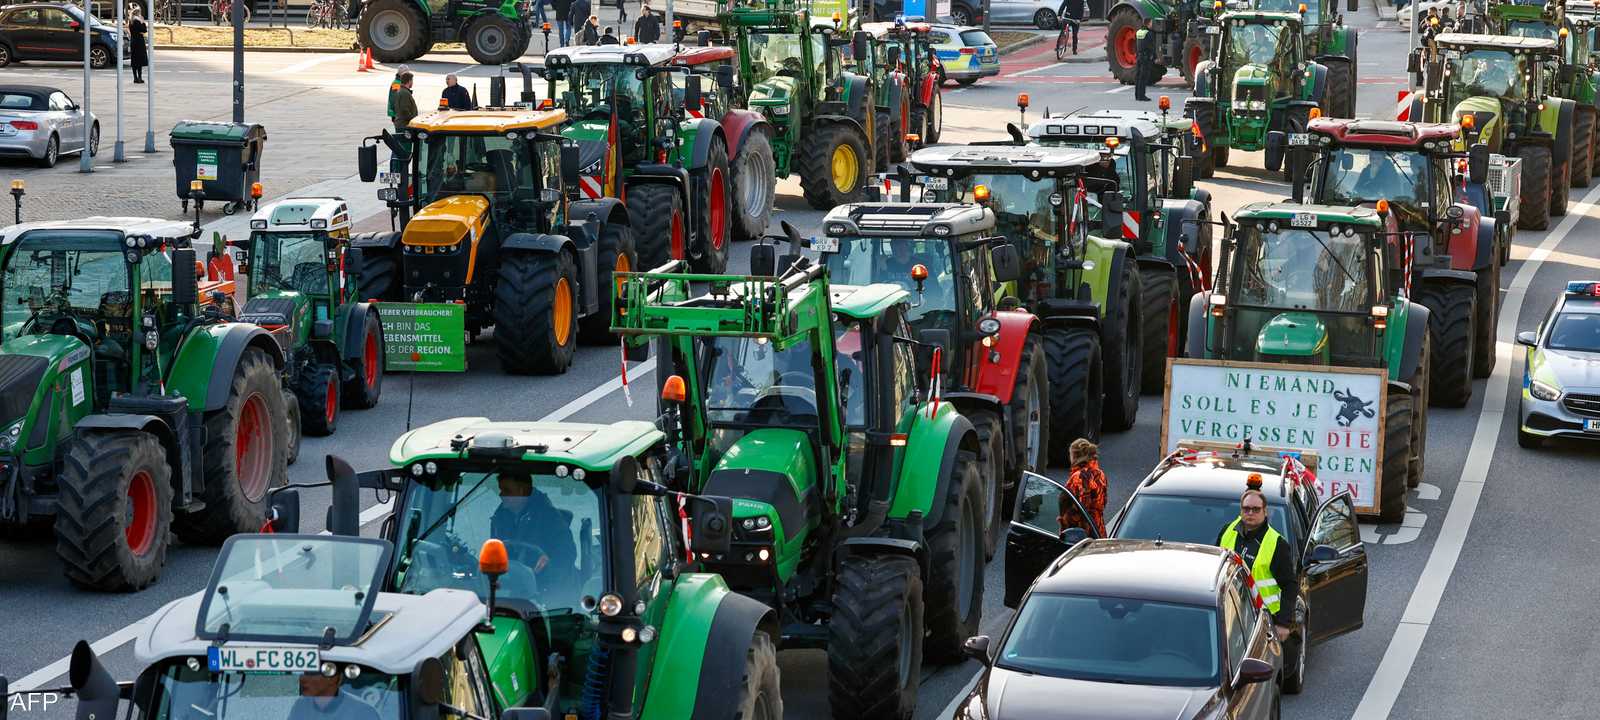 احتجاجات المزارعين في ألمانيا